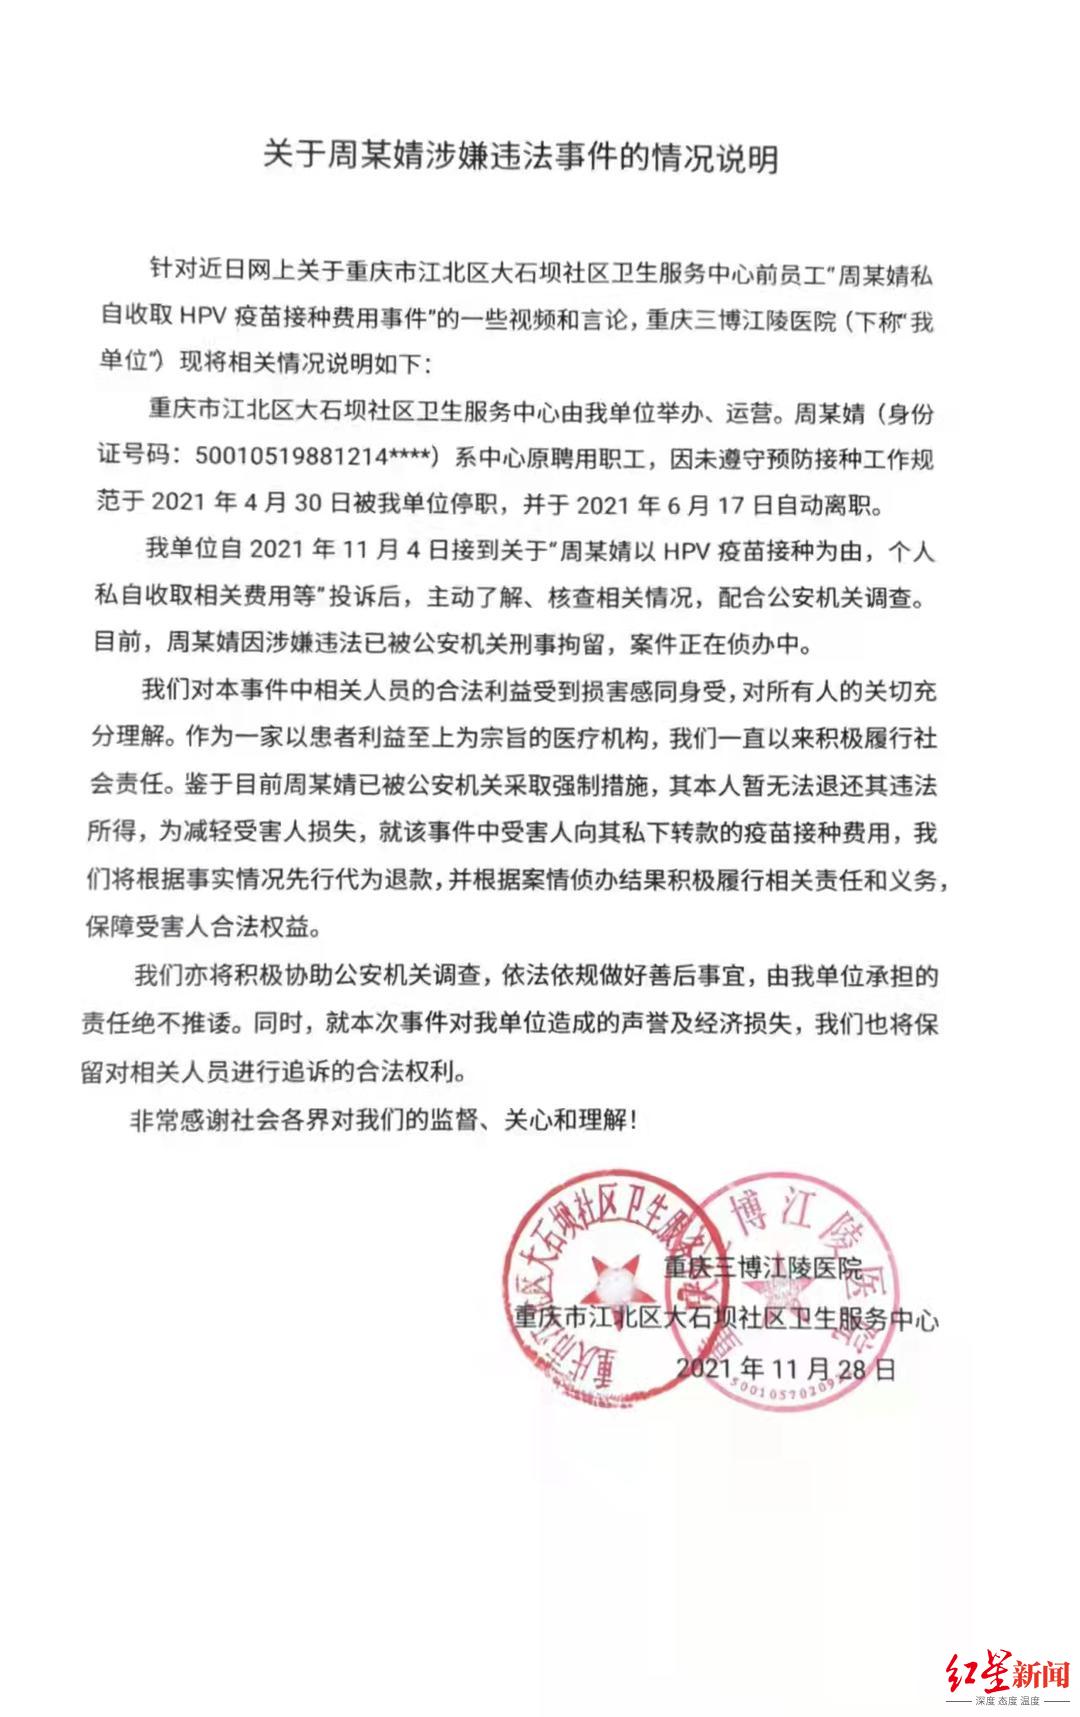 重庆市大石坝社区医院运营单位11月28日出具的“情况说明”。